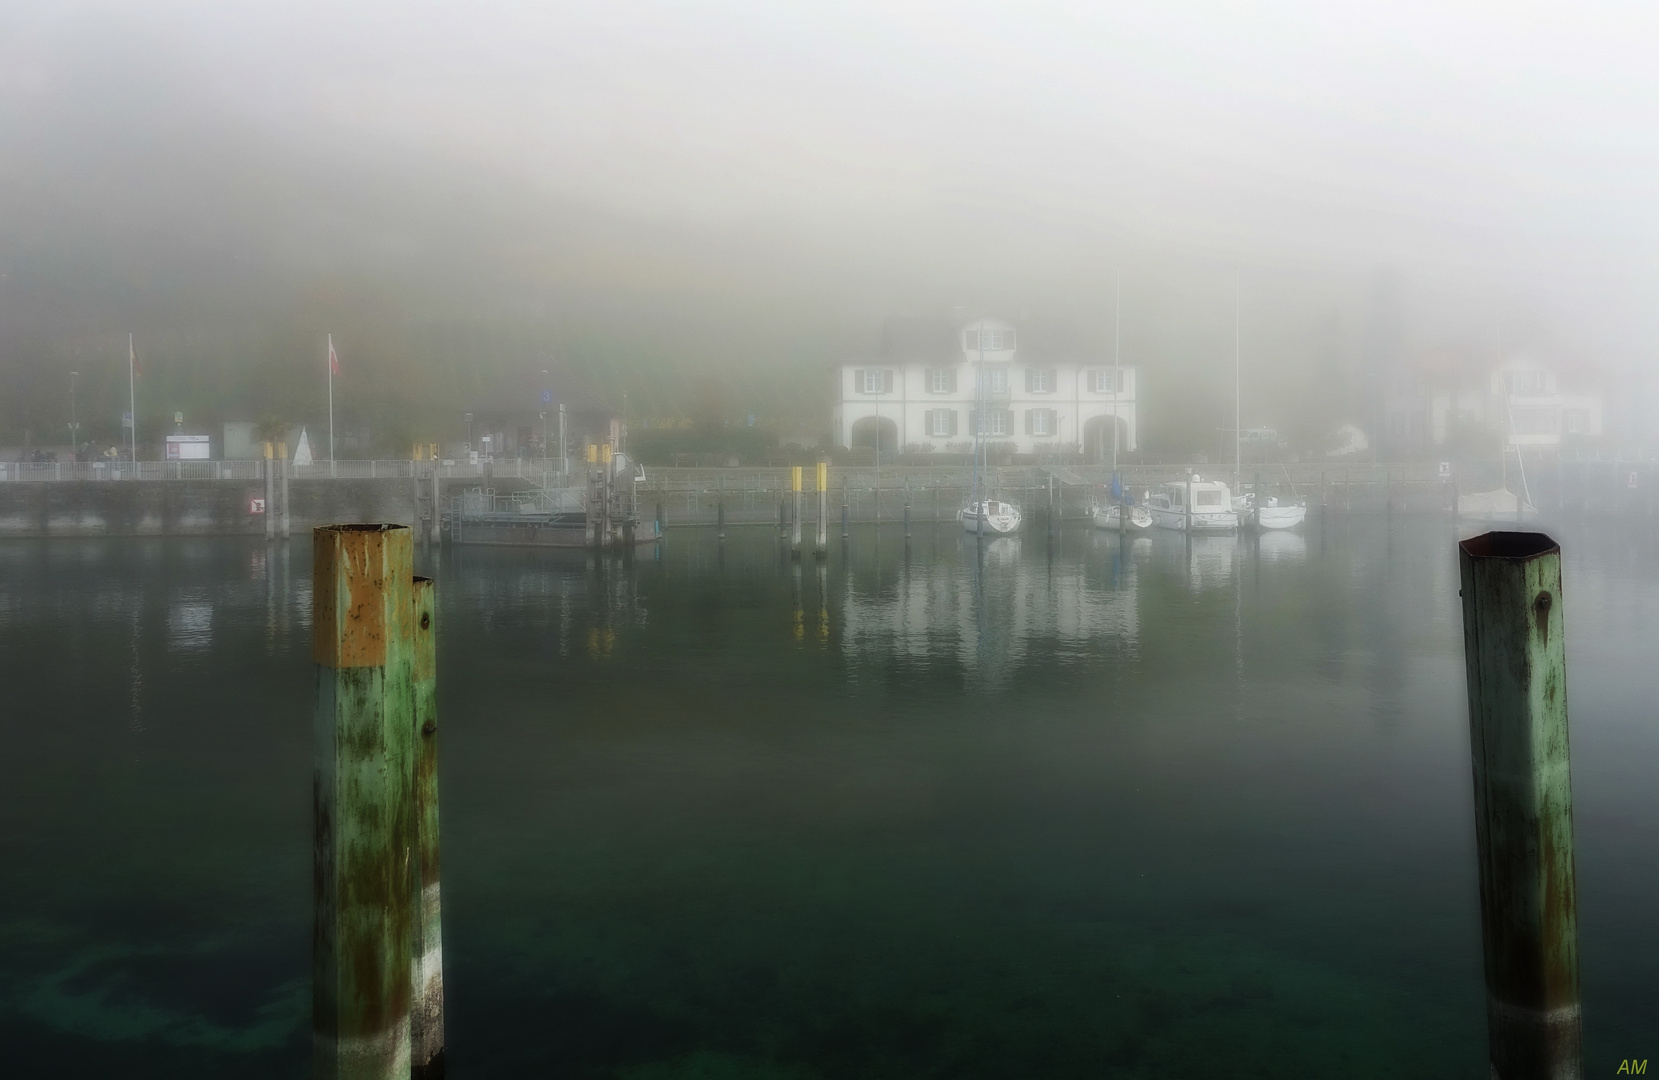 Nebelstimmung im Meersburger Hafen